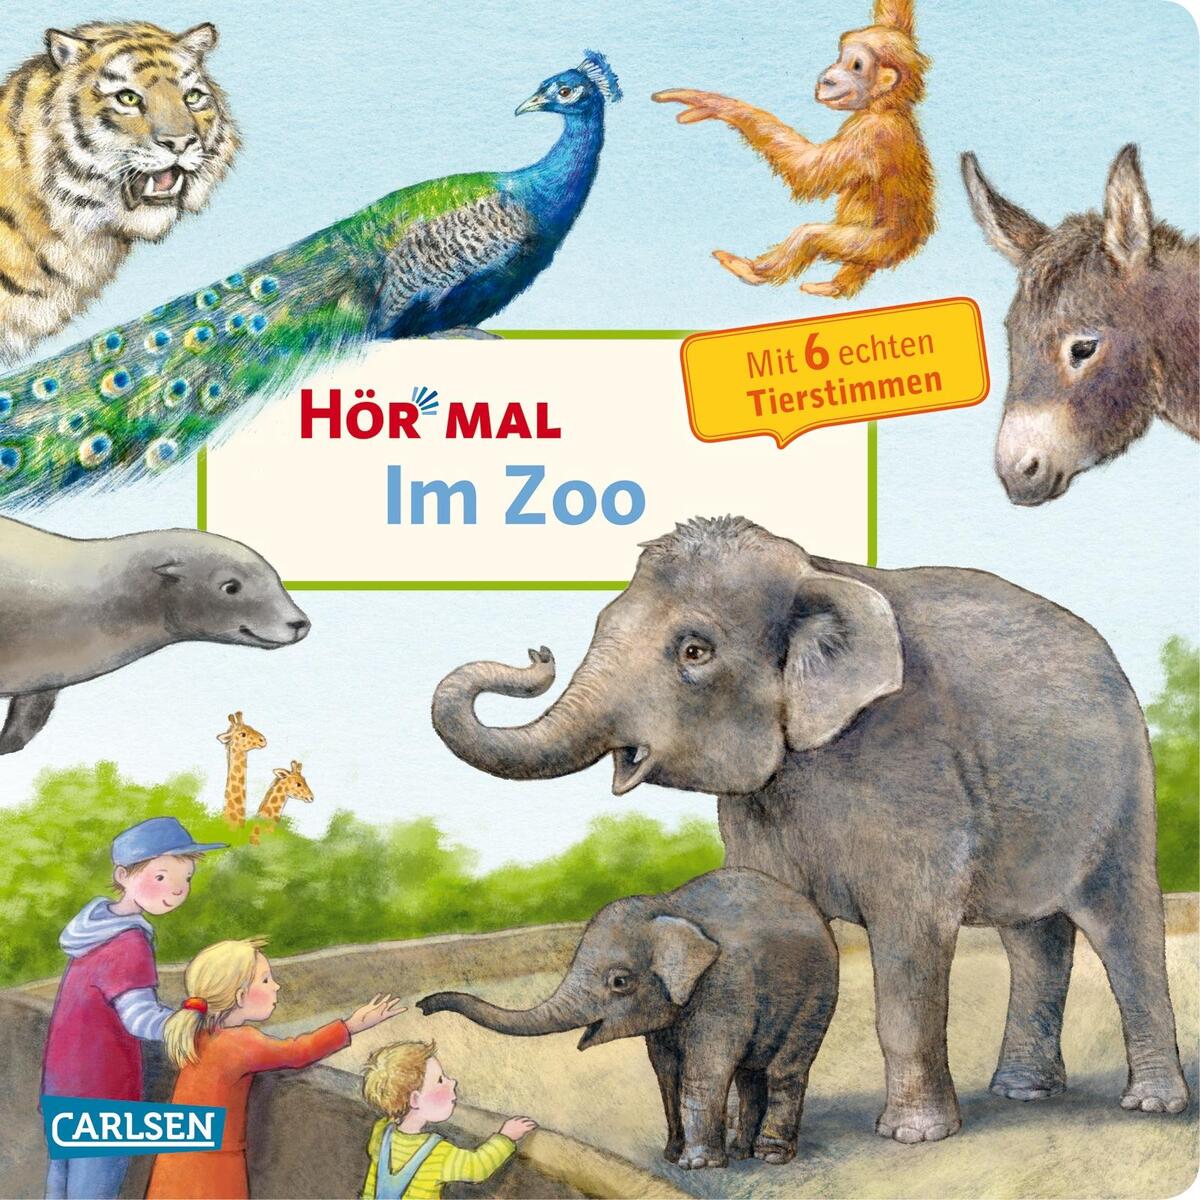 Hör mal (Soundbuch): Im Zoo von Carlsen Verlag GmbH